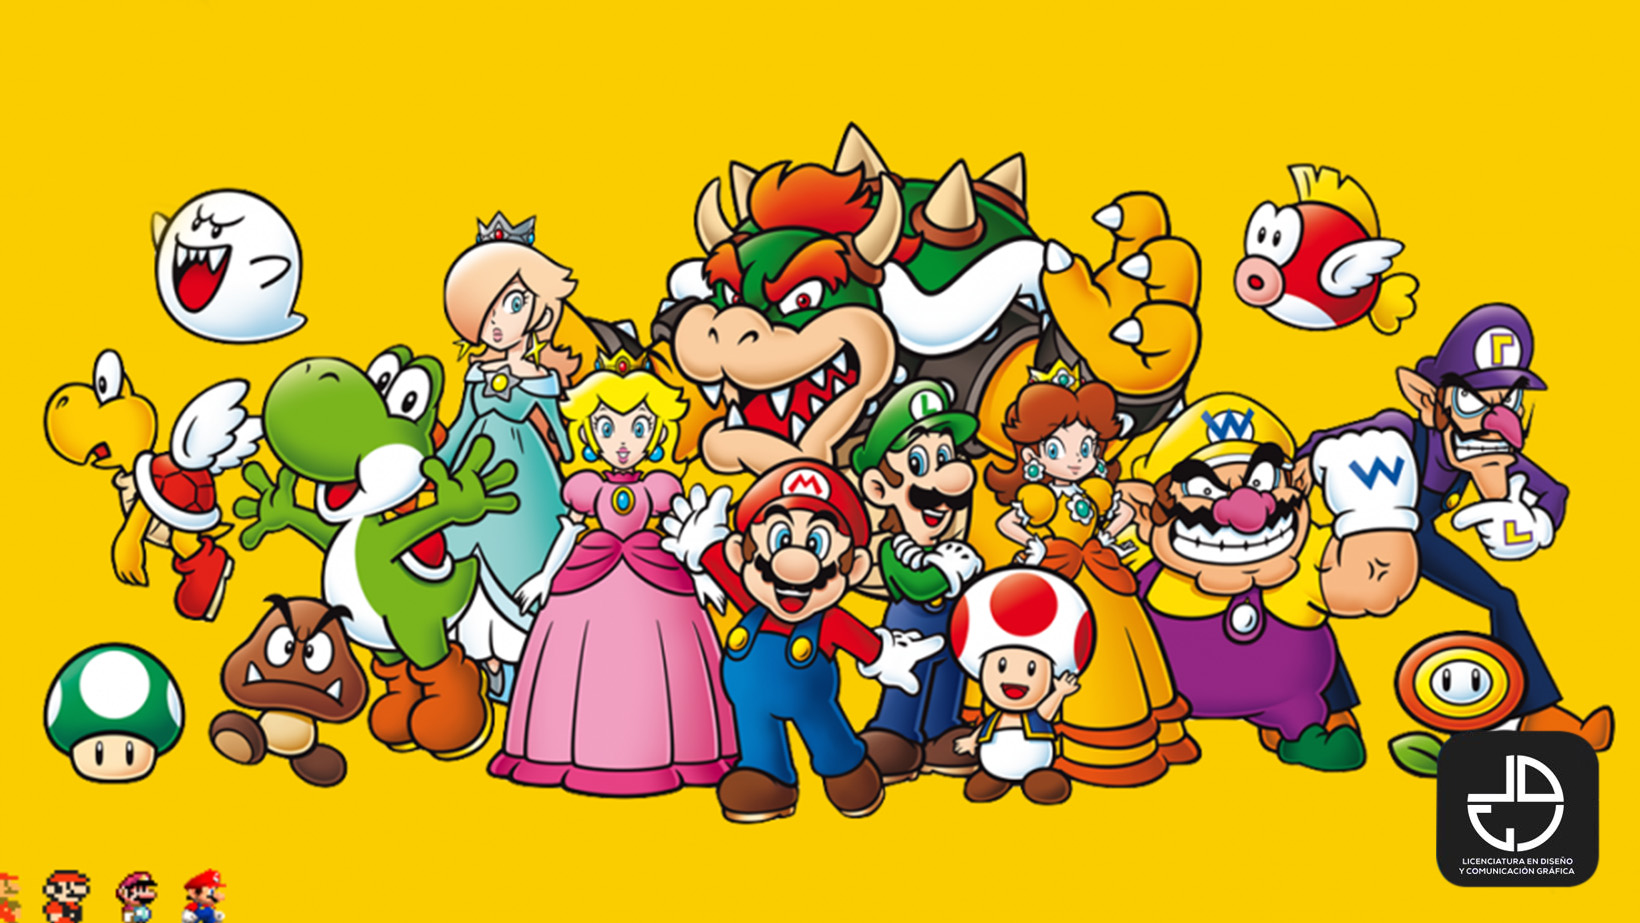 Imagenes De Los Personajes De Mario Bros Reverasite